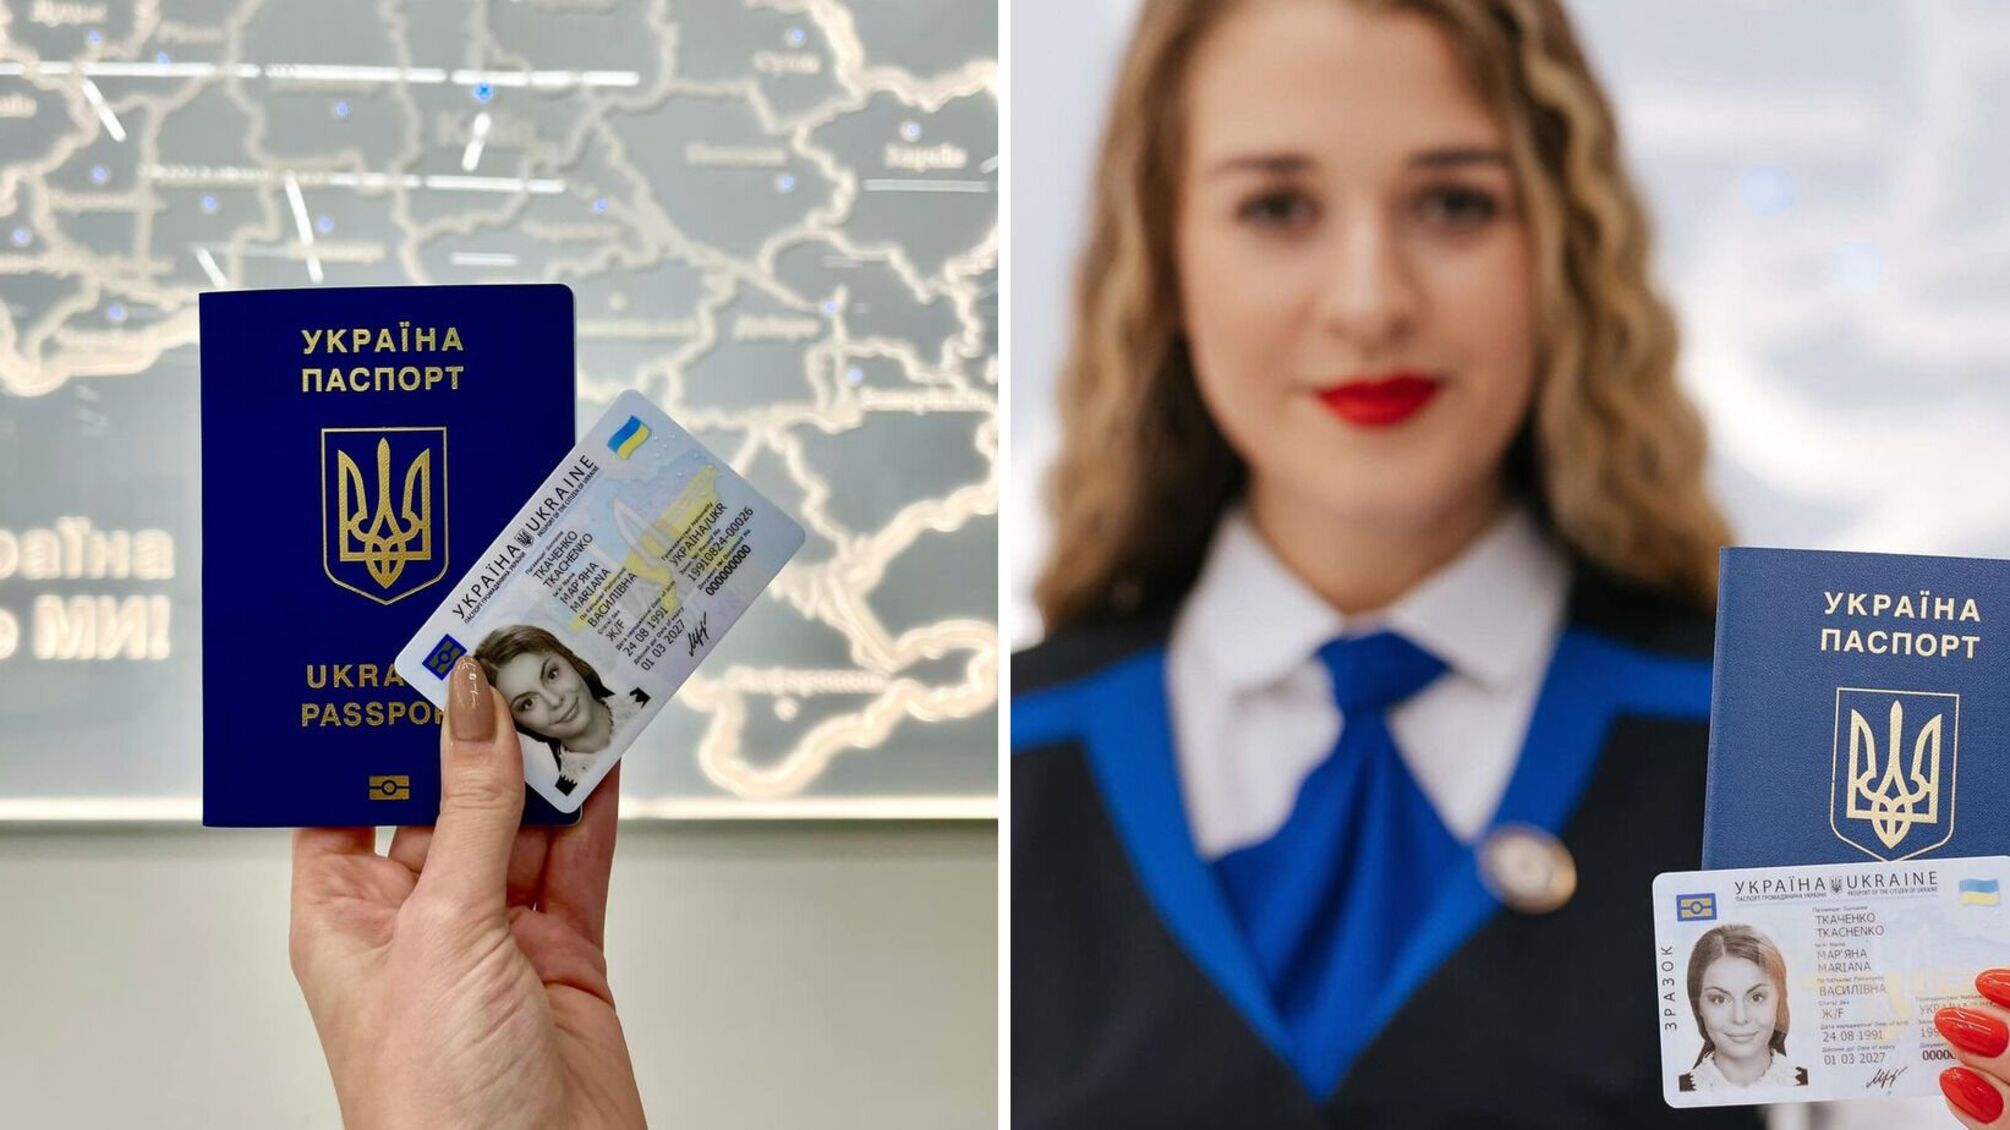 Центри обслуговування громадян «Паспортний сервіс» України відновлюють роботу